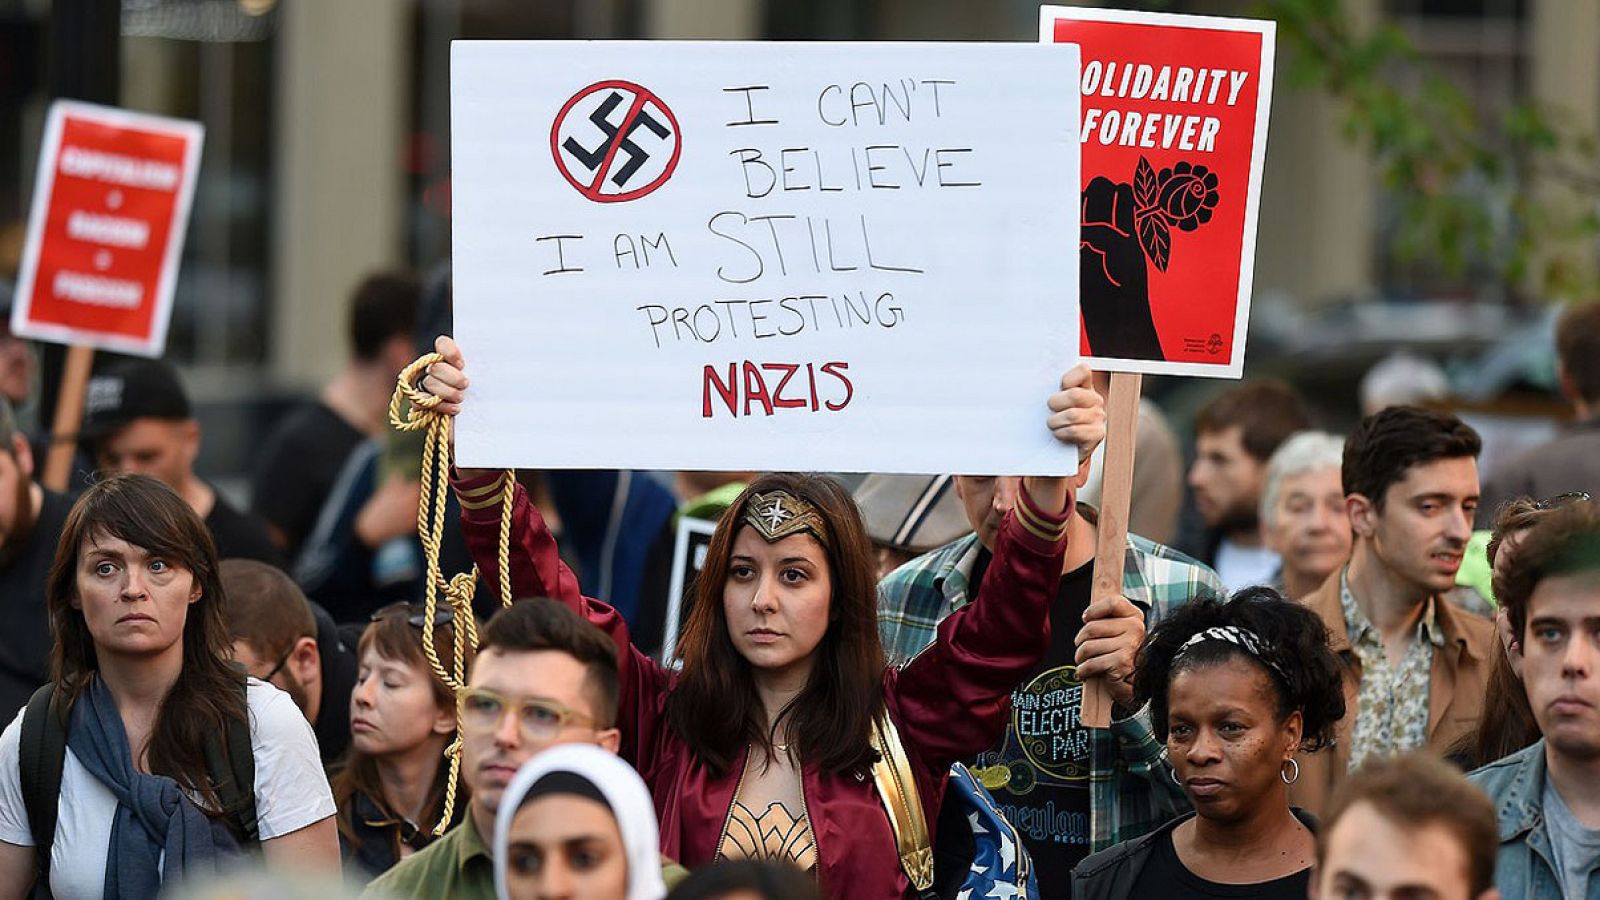 Manifestación en Oakland, California, de repulsa por los sucesos de Charlottesville. En el cartel se lee: "No puede creer que aún esté protestando contra los nazis".